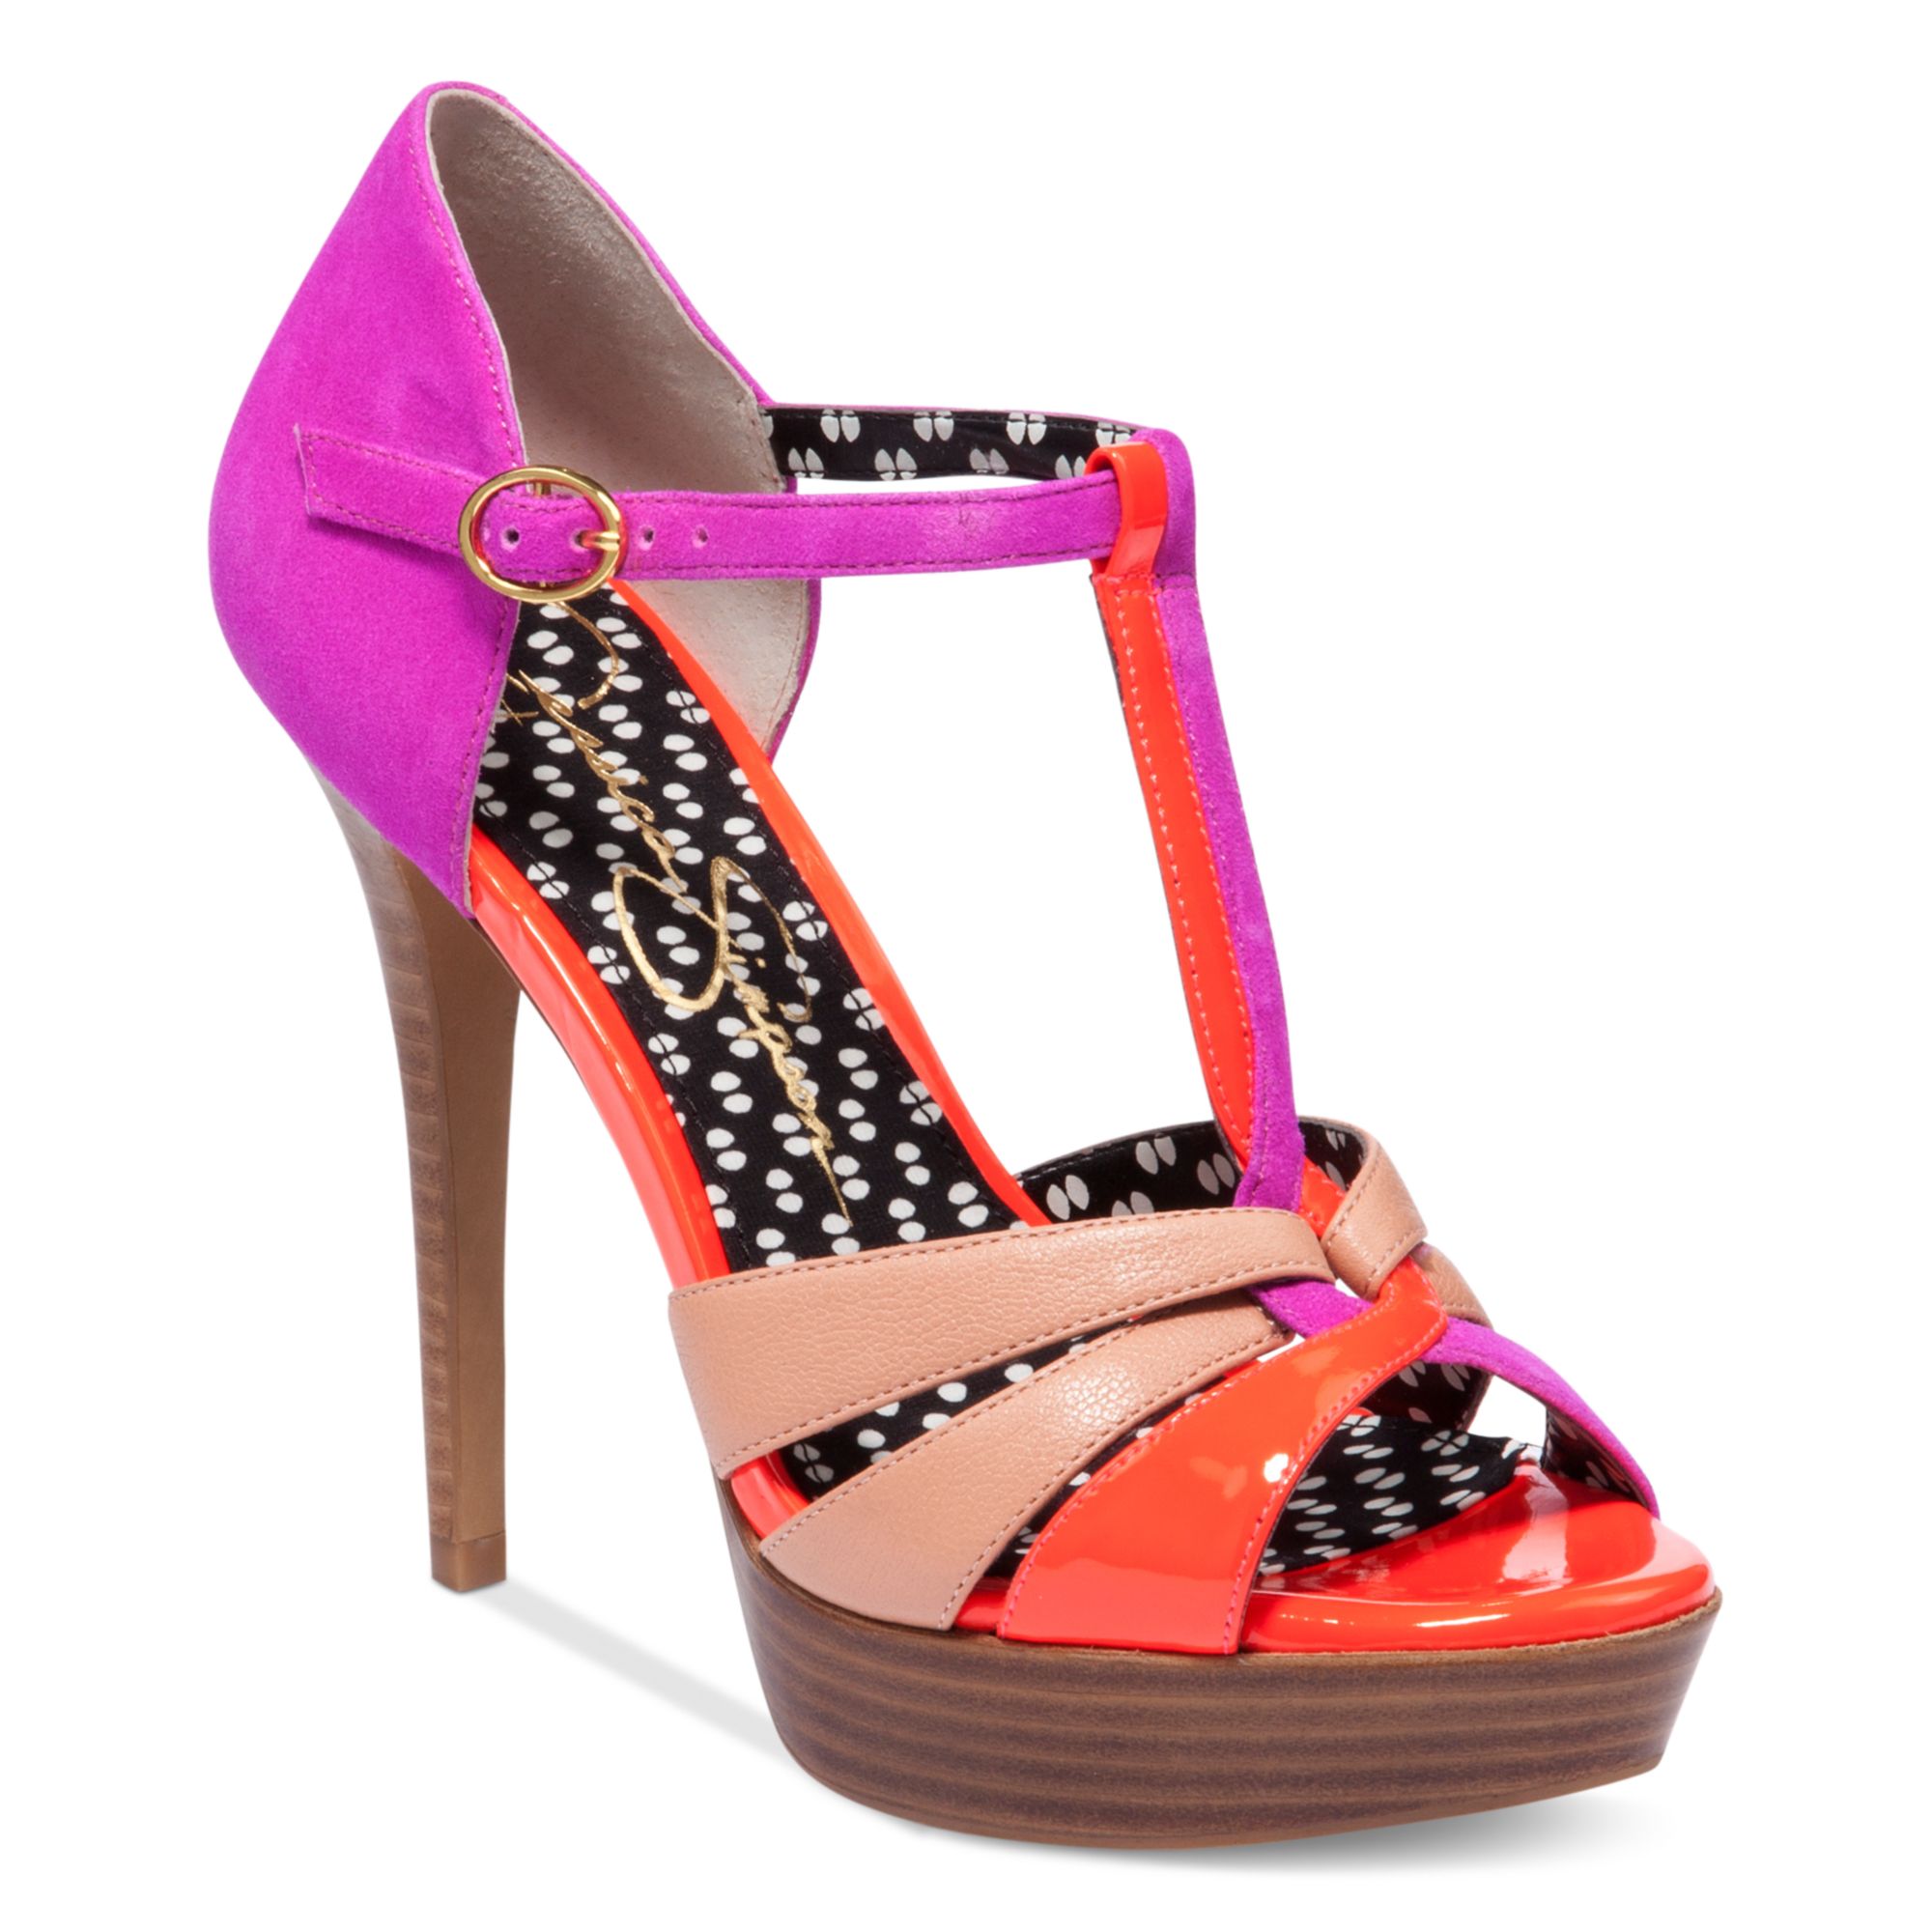 Jessica Simpson Bentley Platform Sandals in Hot Pink Combo